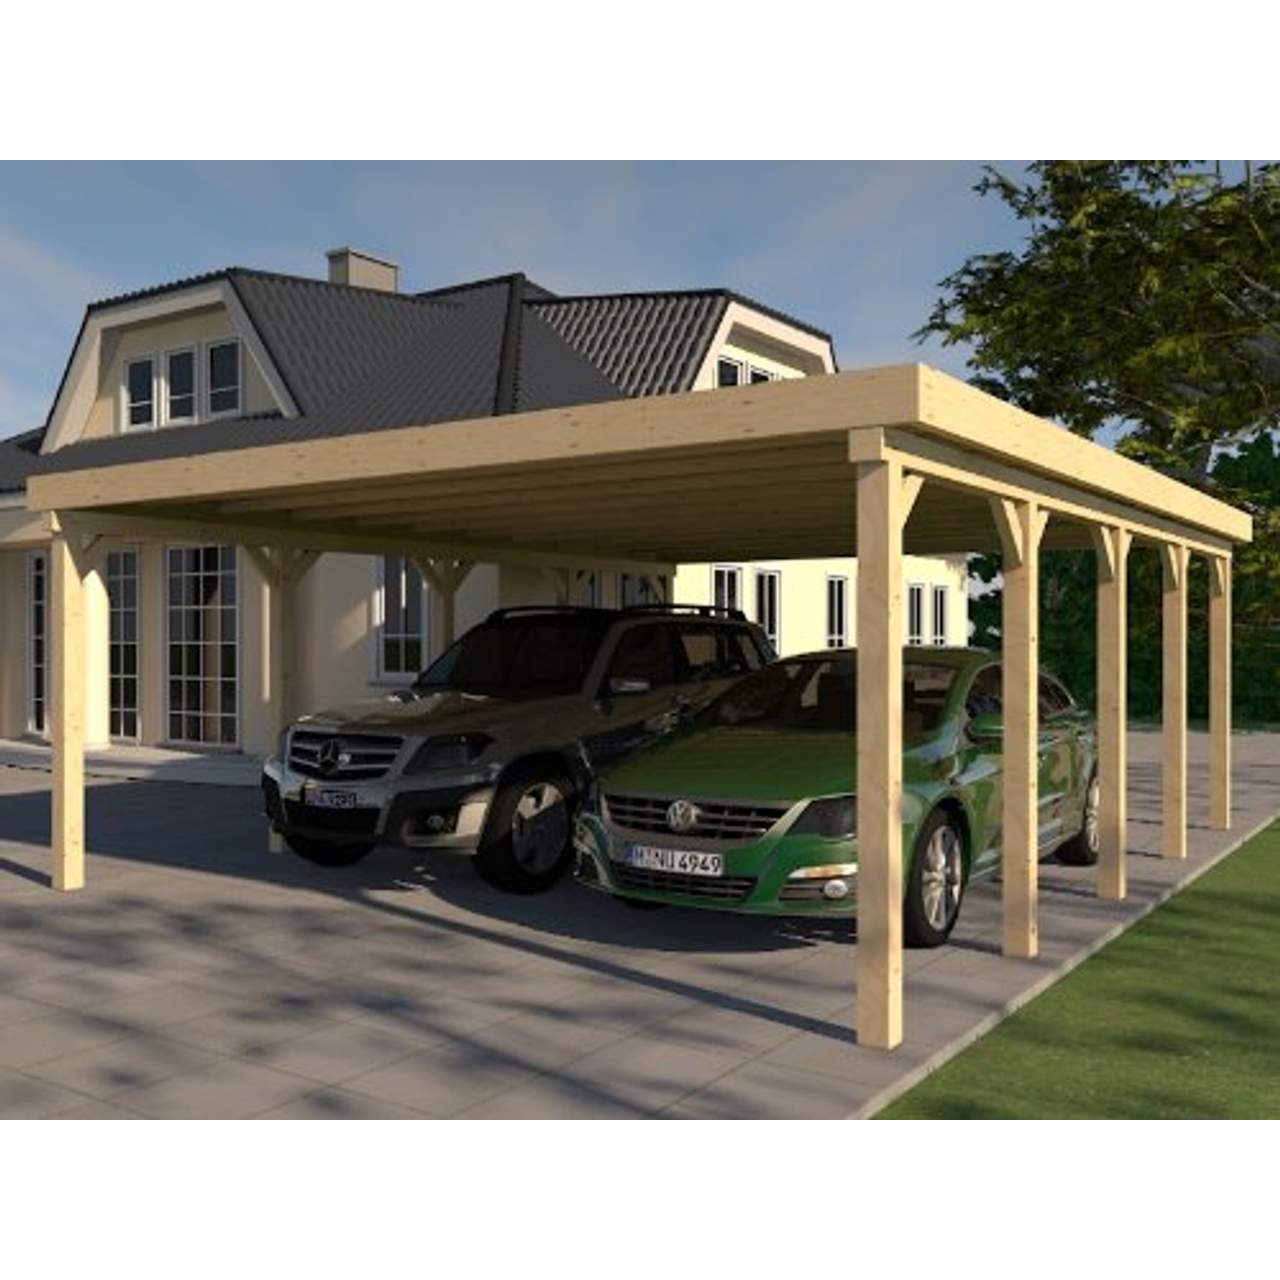 Http Www Joombig Com In 2021 Carport Dach Carport Mit Abstellraum Einzelcarport